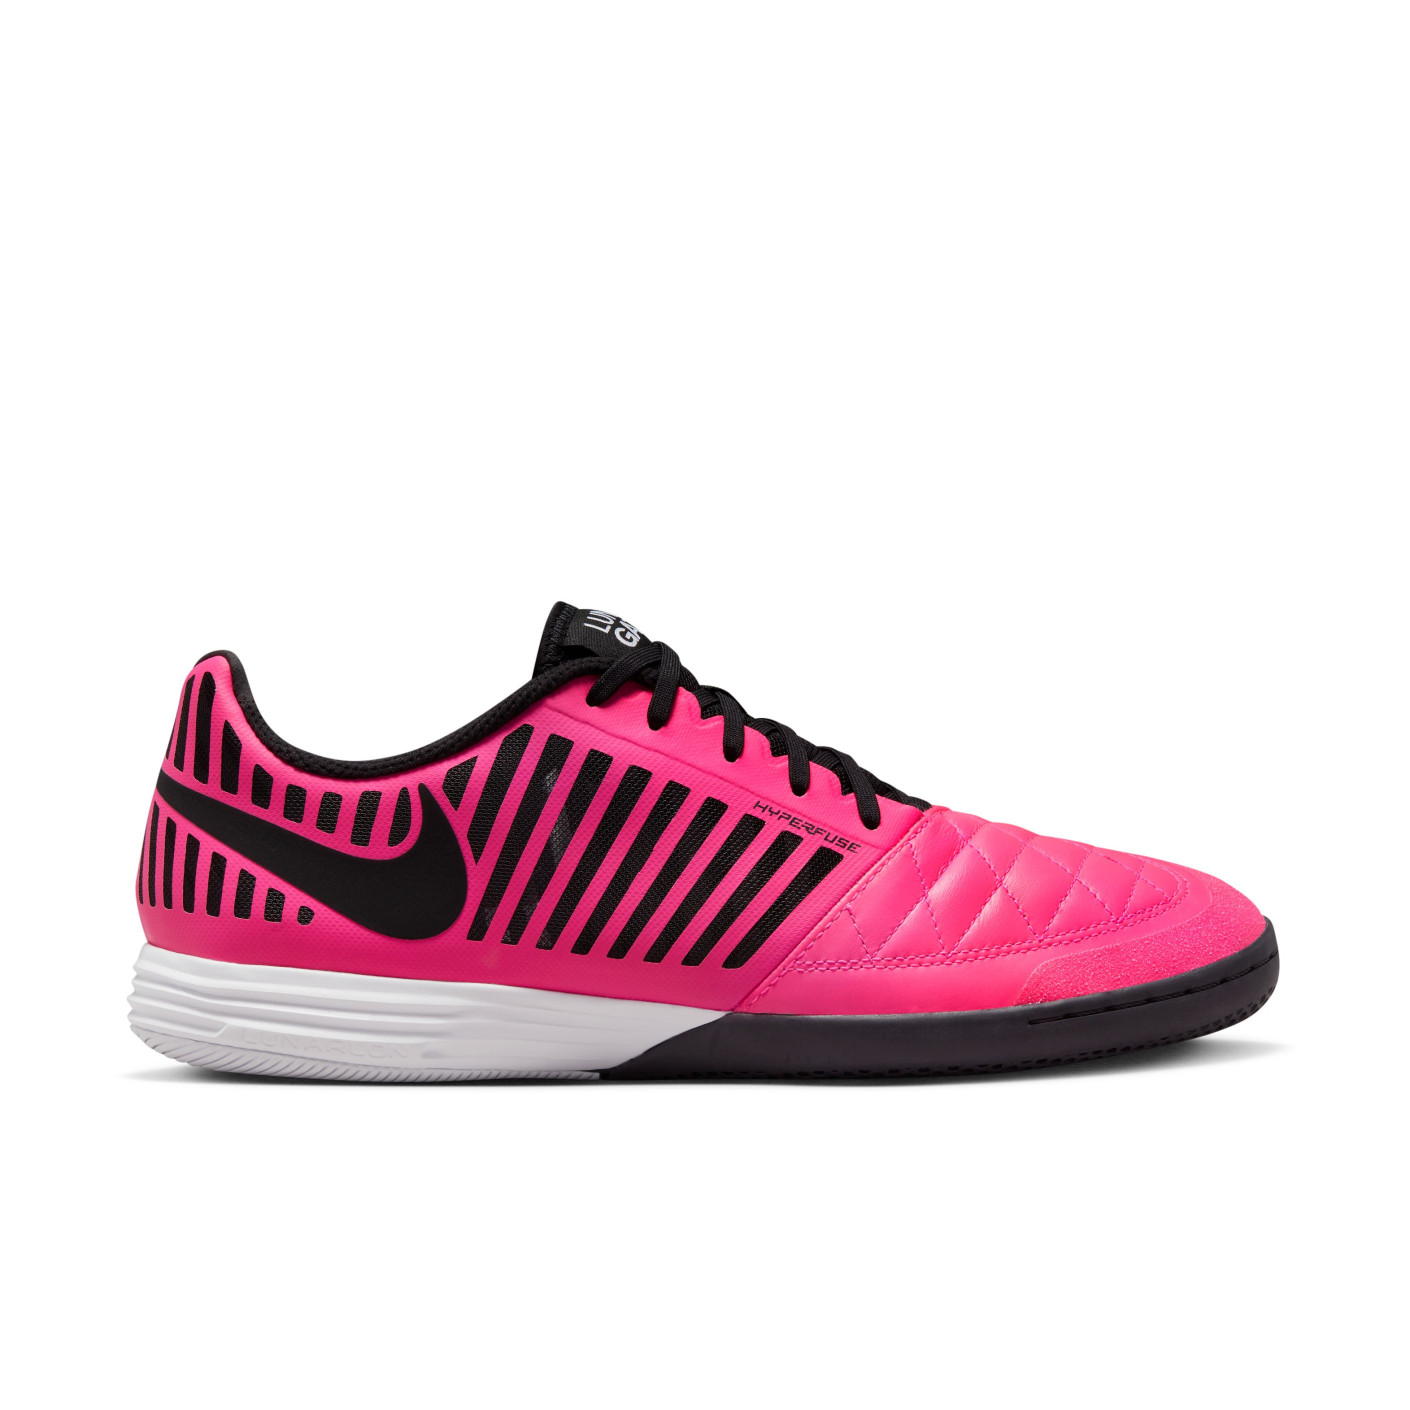 Nike Lunar Gato II Zaalvoetbalschoenen (IN) Roze Zwart